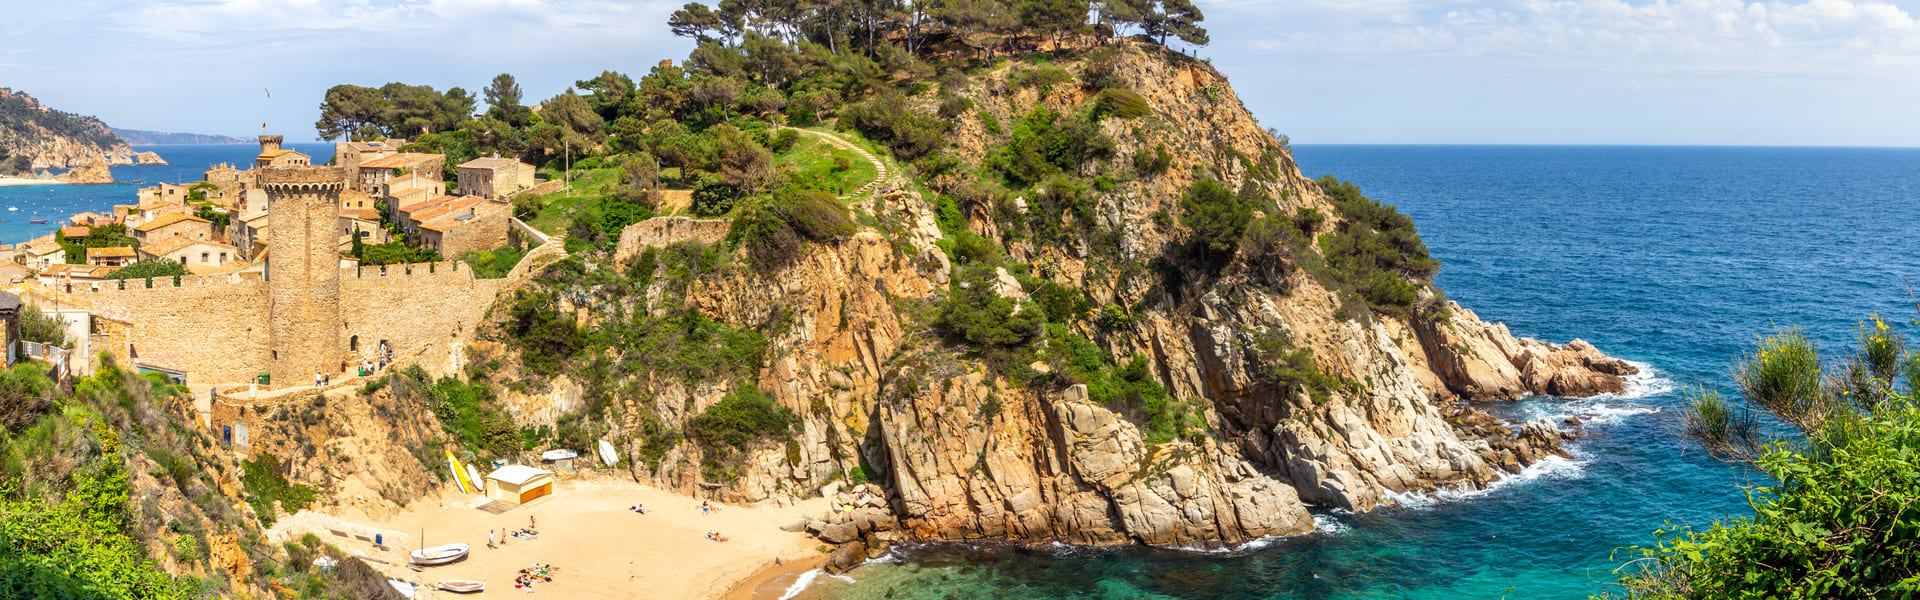 Costa Brava, un viaje a través de su historia, naturaleza y playas